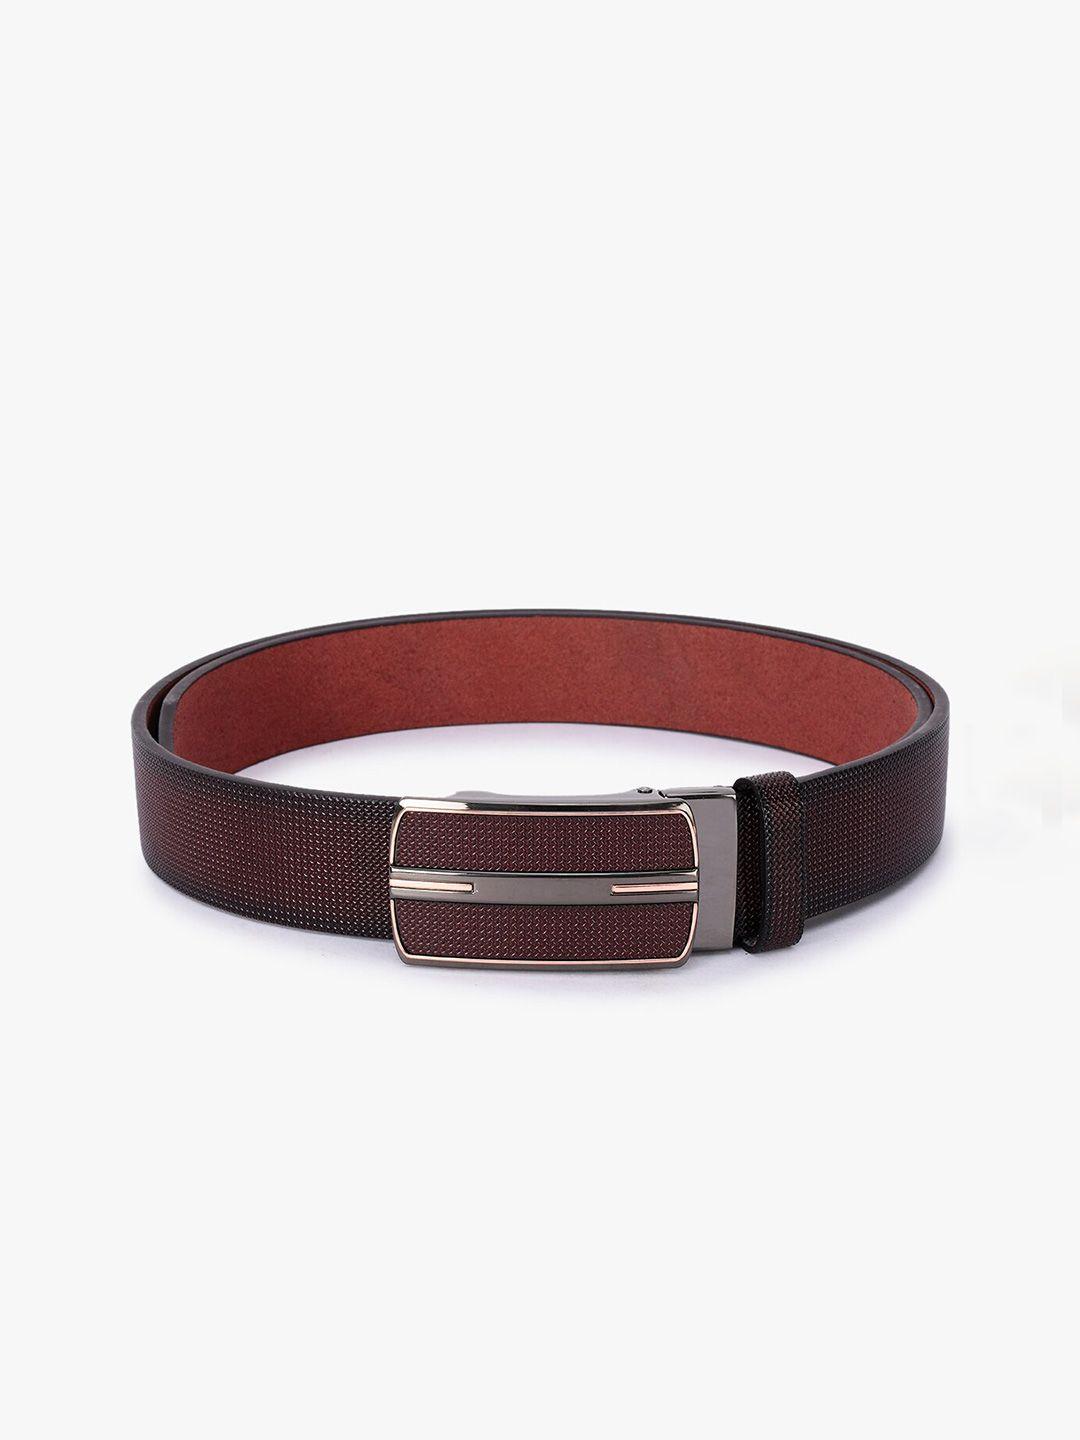 buckleup men maroon textured leather formal belt